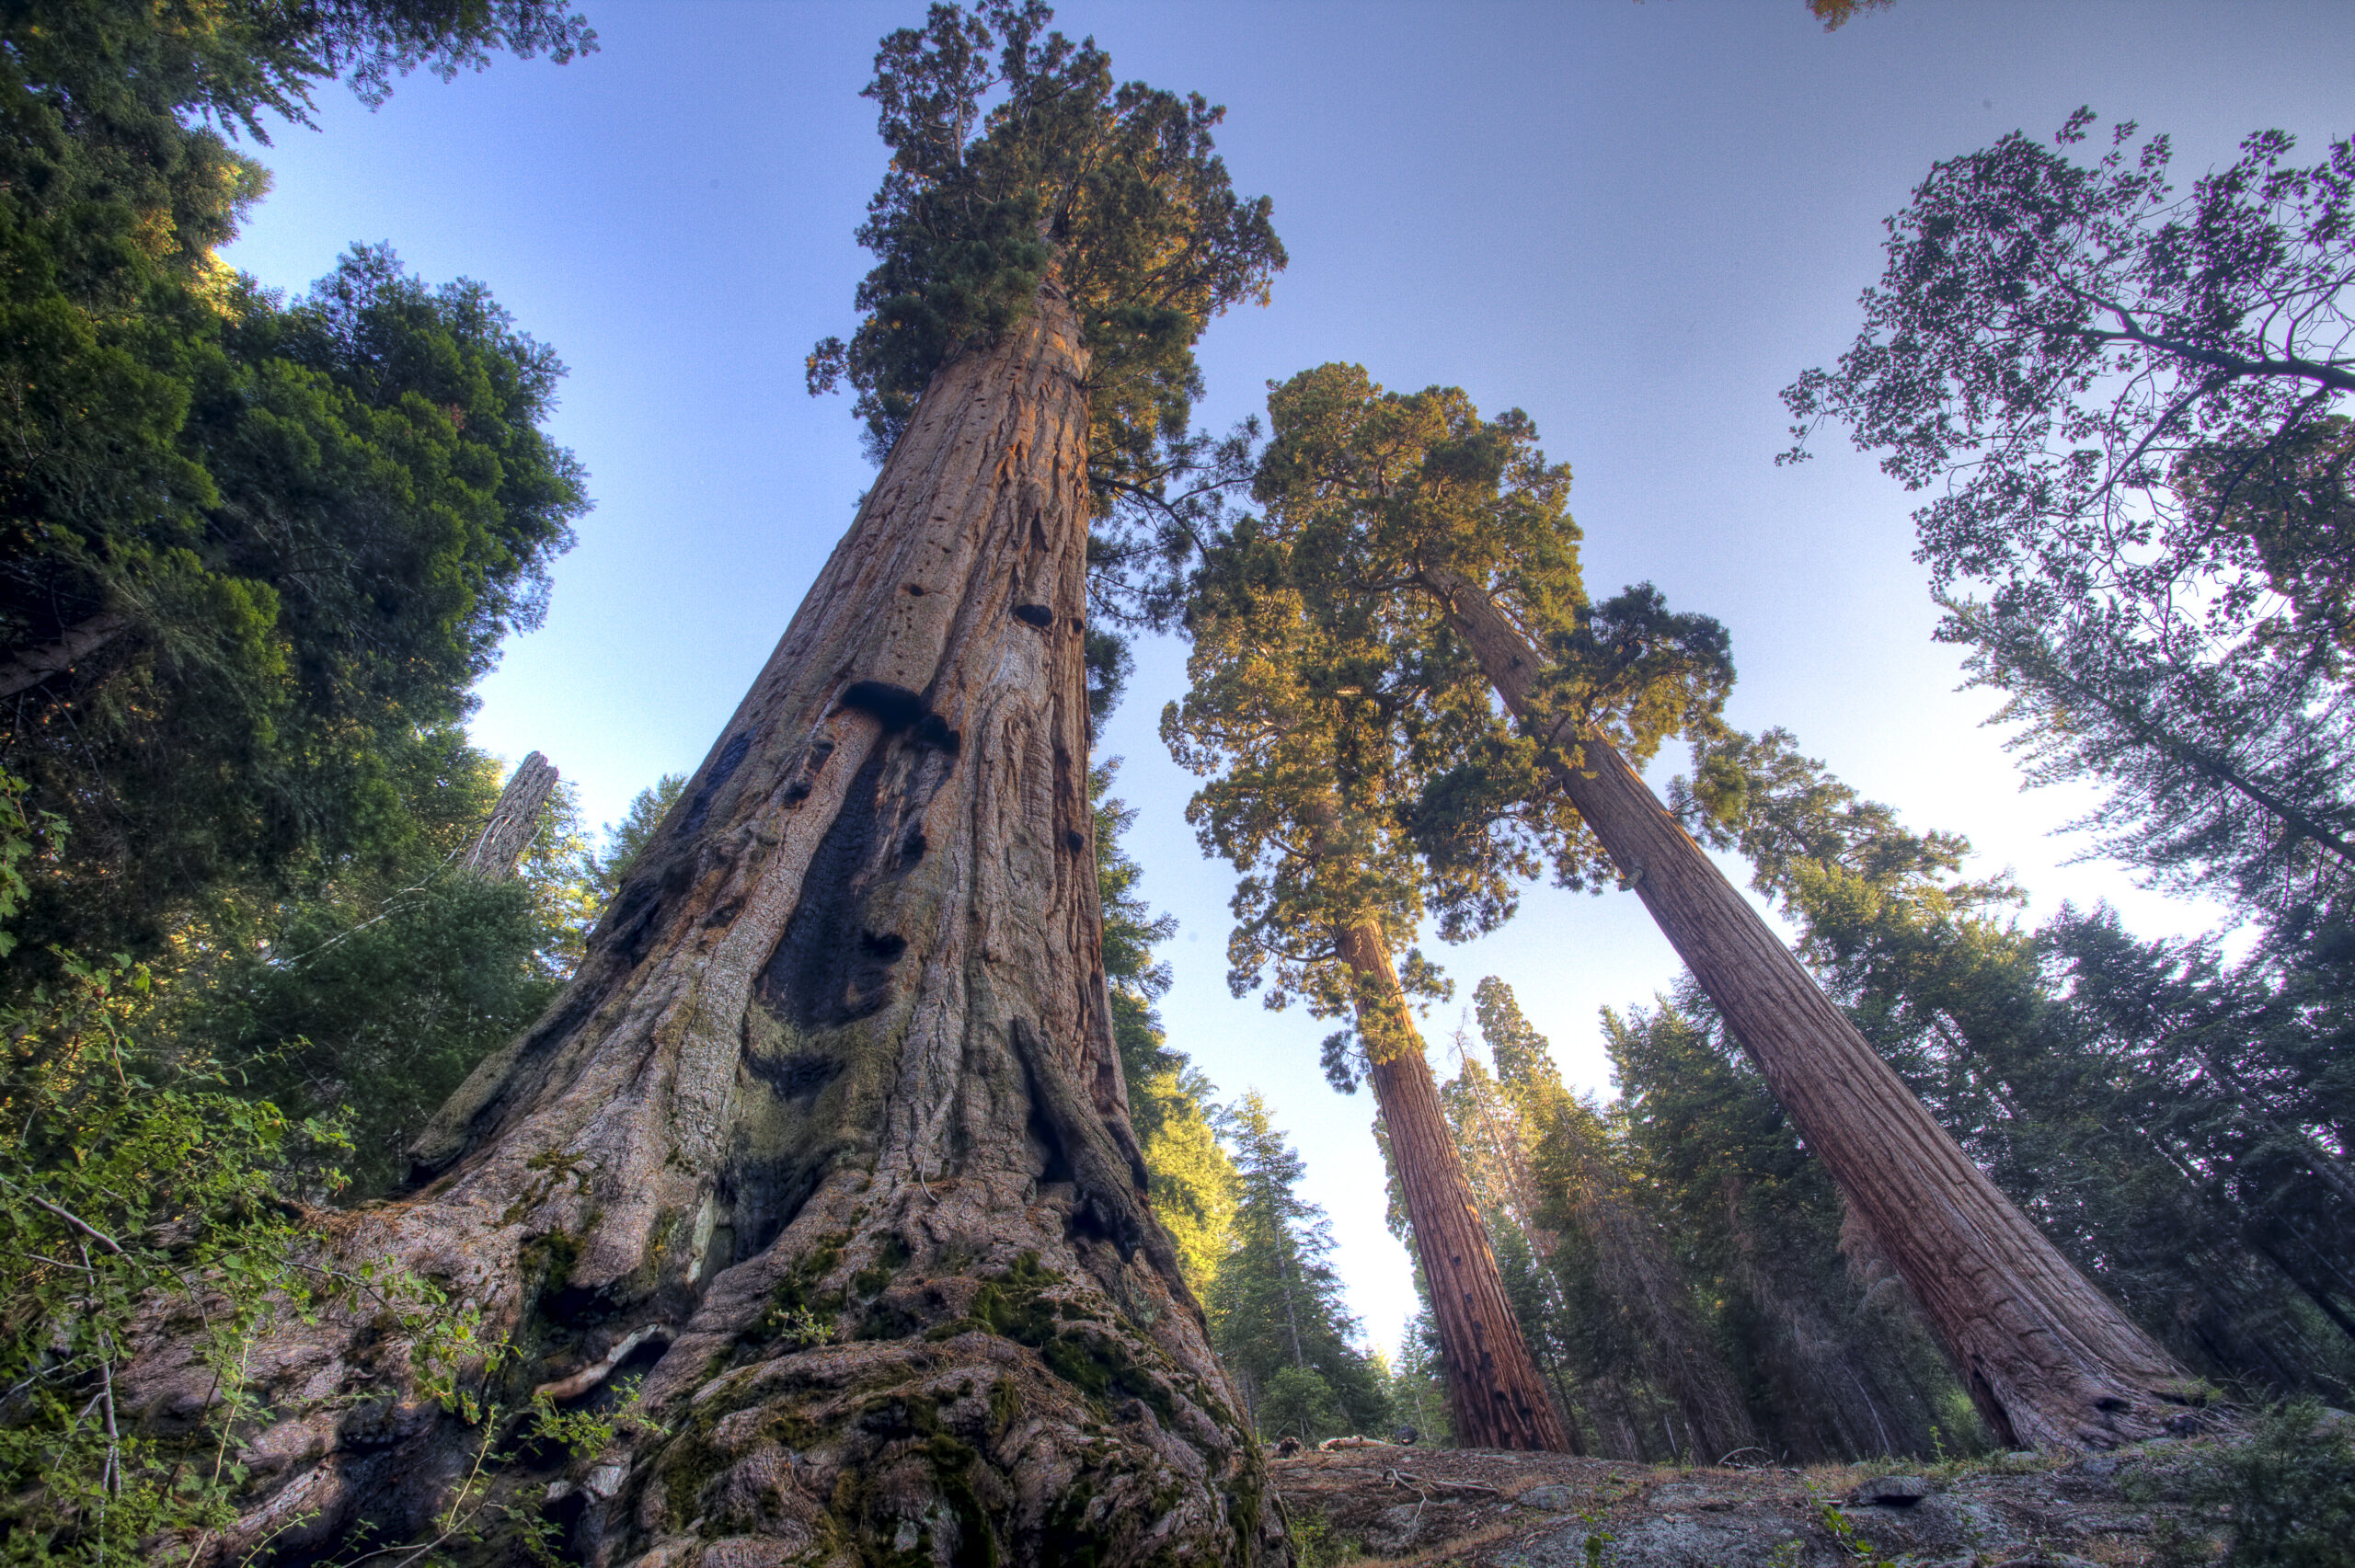 Лес где дерево на дереве стоит. Калифорнийская Секвойя Гиперион. Секвойя дерево. Секвойя дерево гигант. Секвойя вечнозеленая дерево.